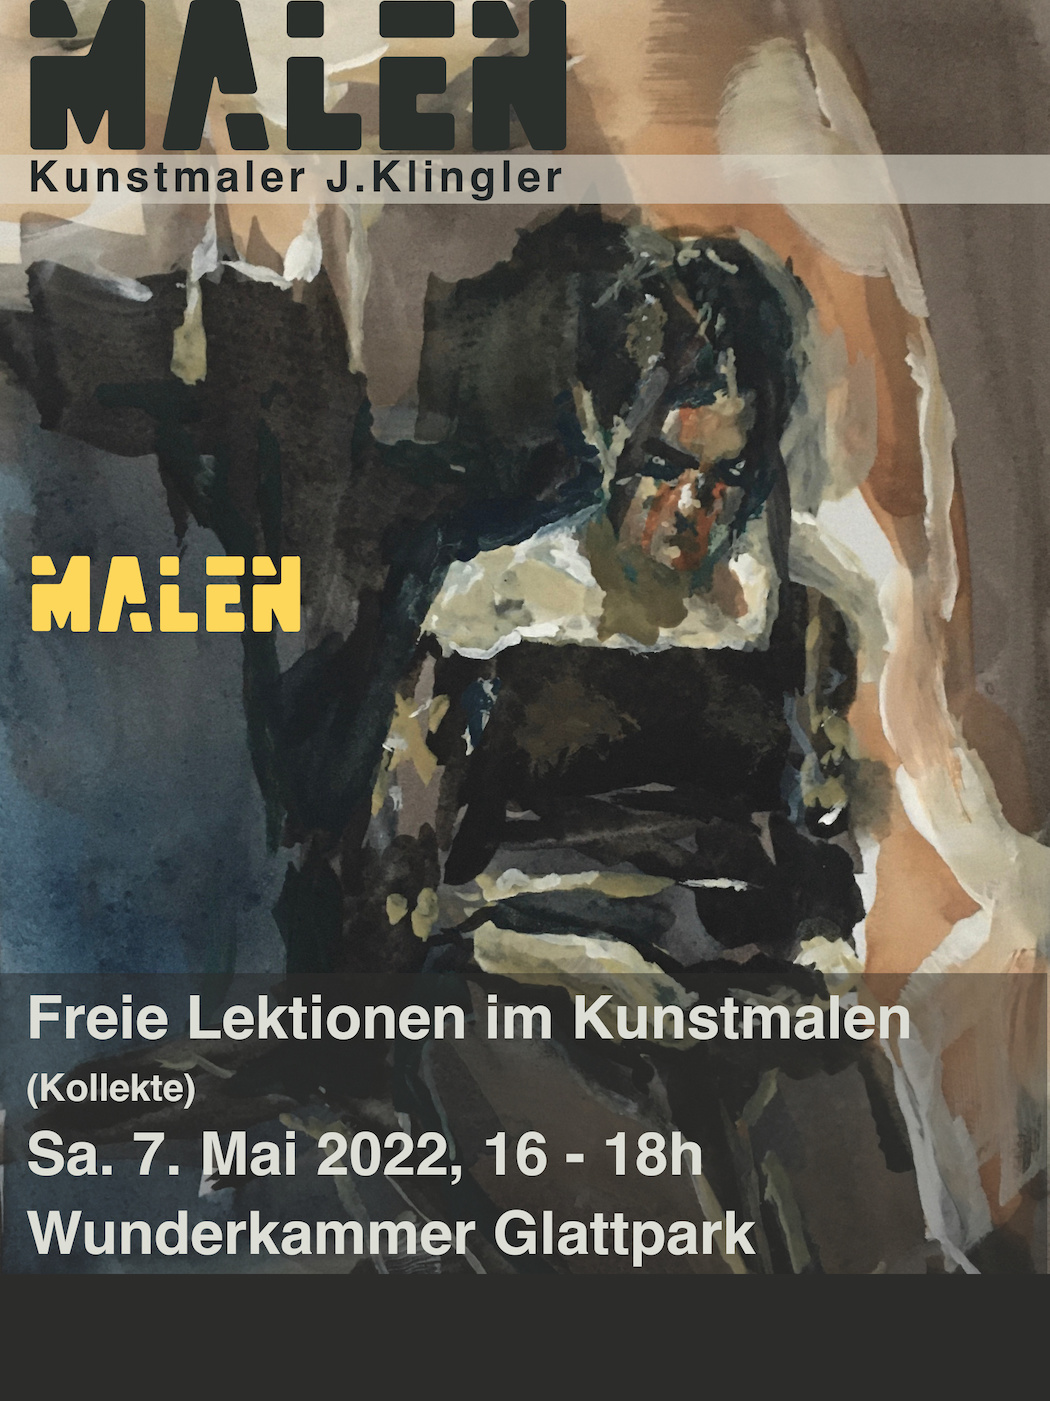 Exhibition Agglo, December 2021, Wunderkammer Zürich